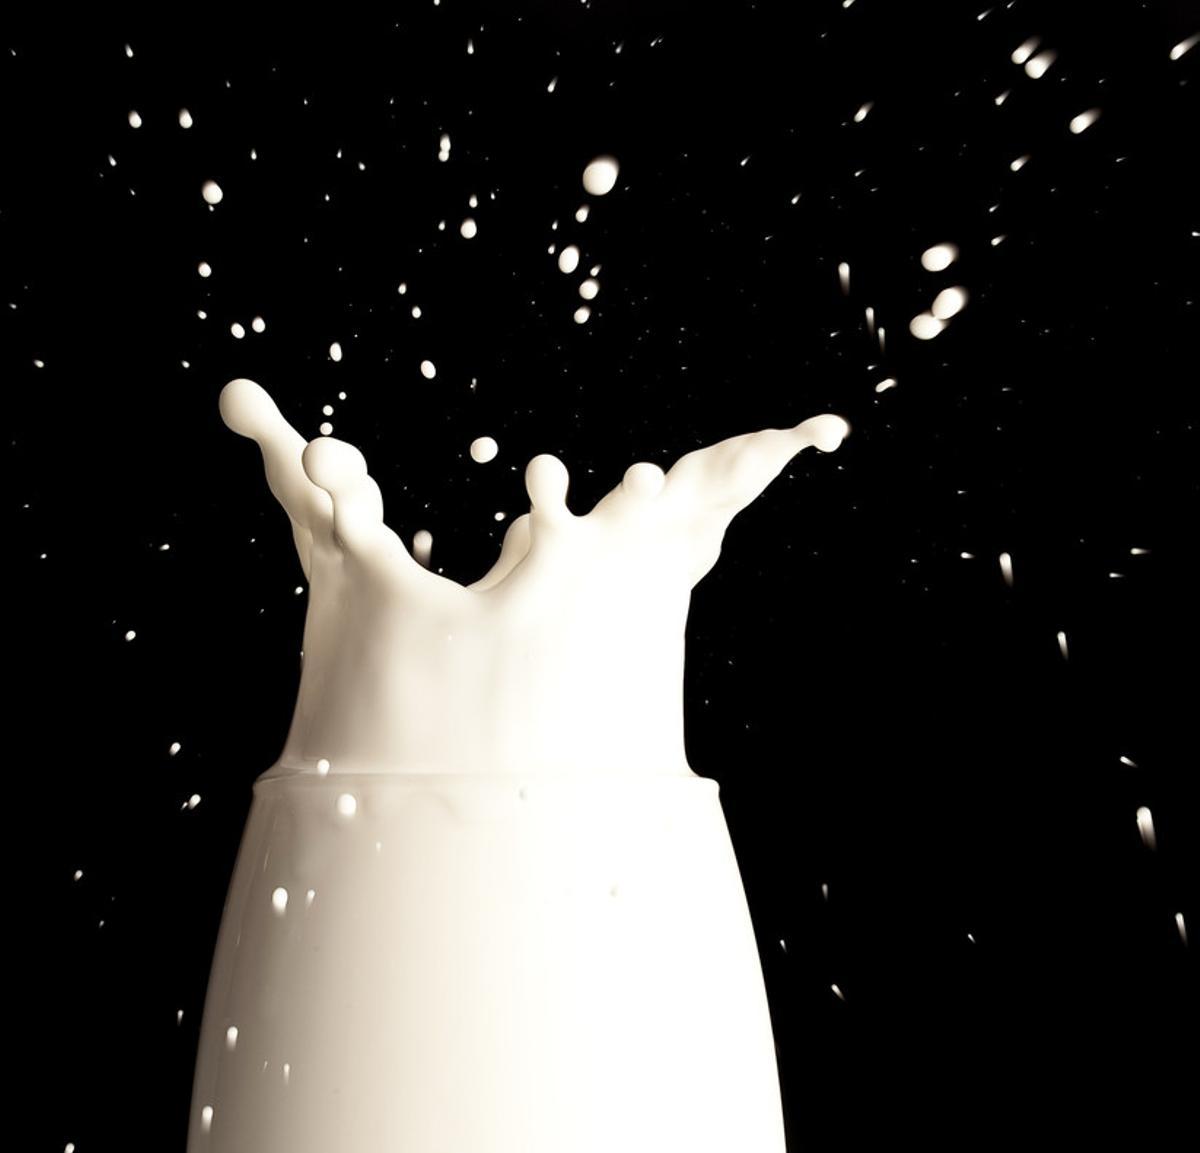 ¿Es más sana la leche sin lactosa?